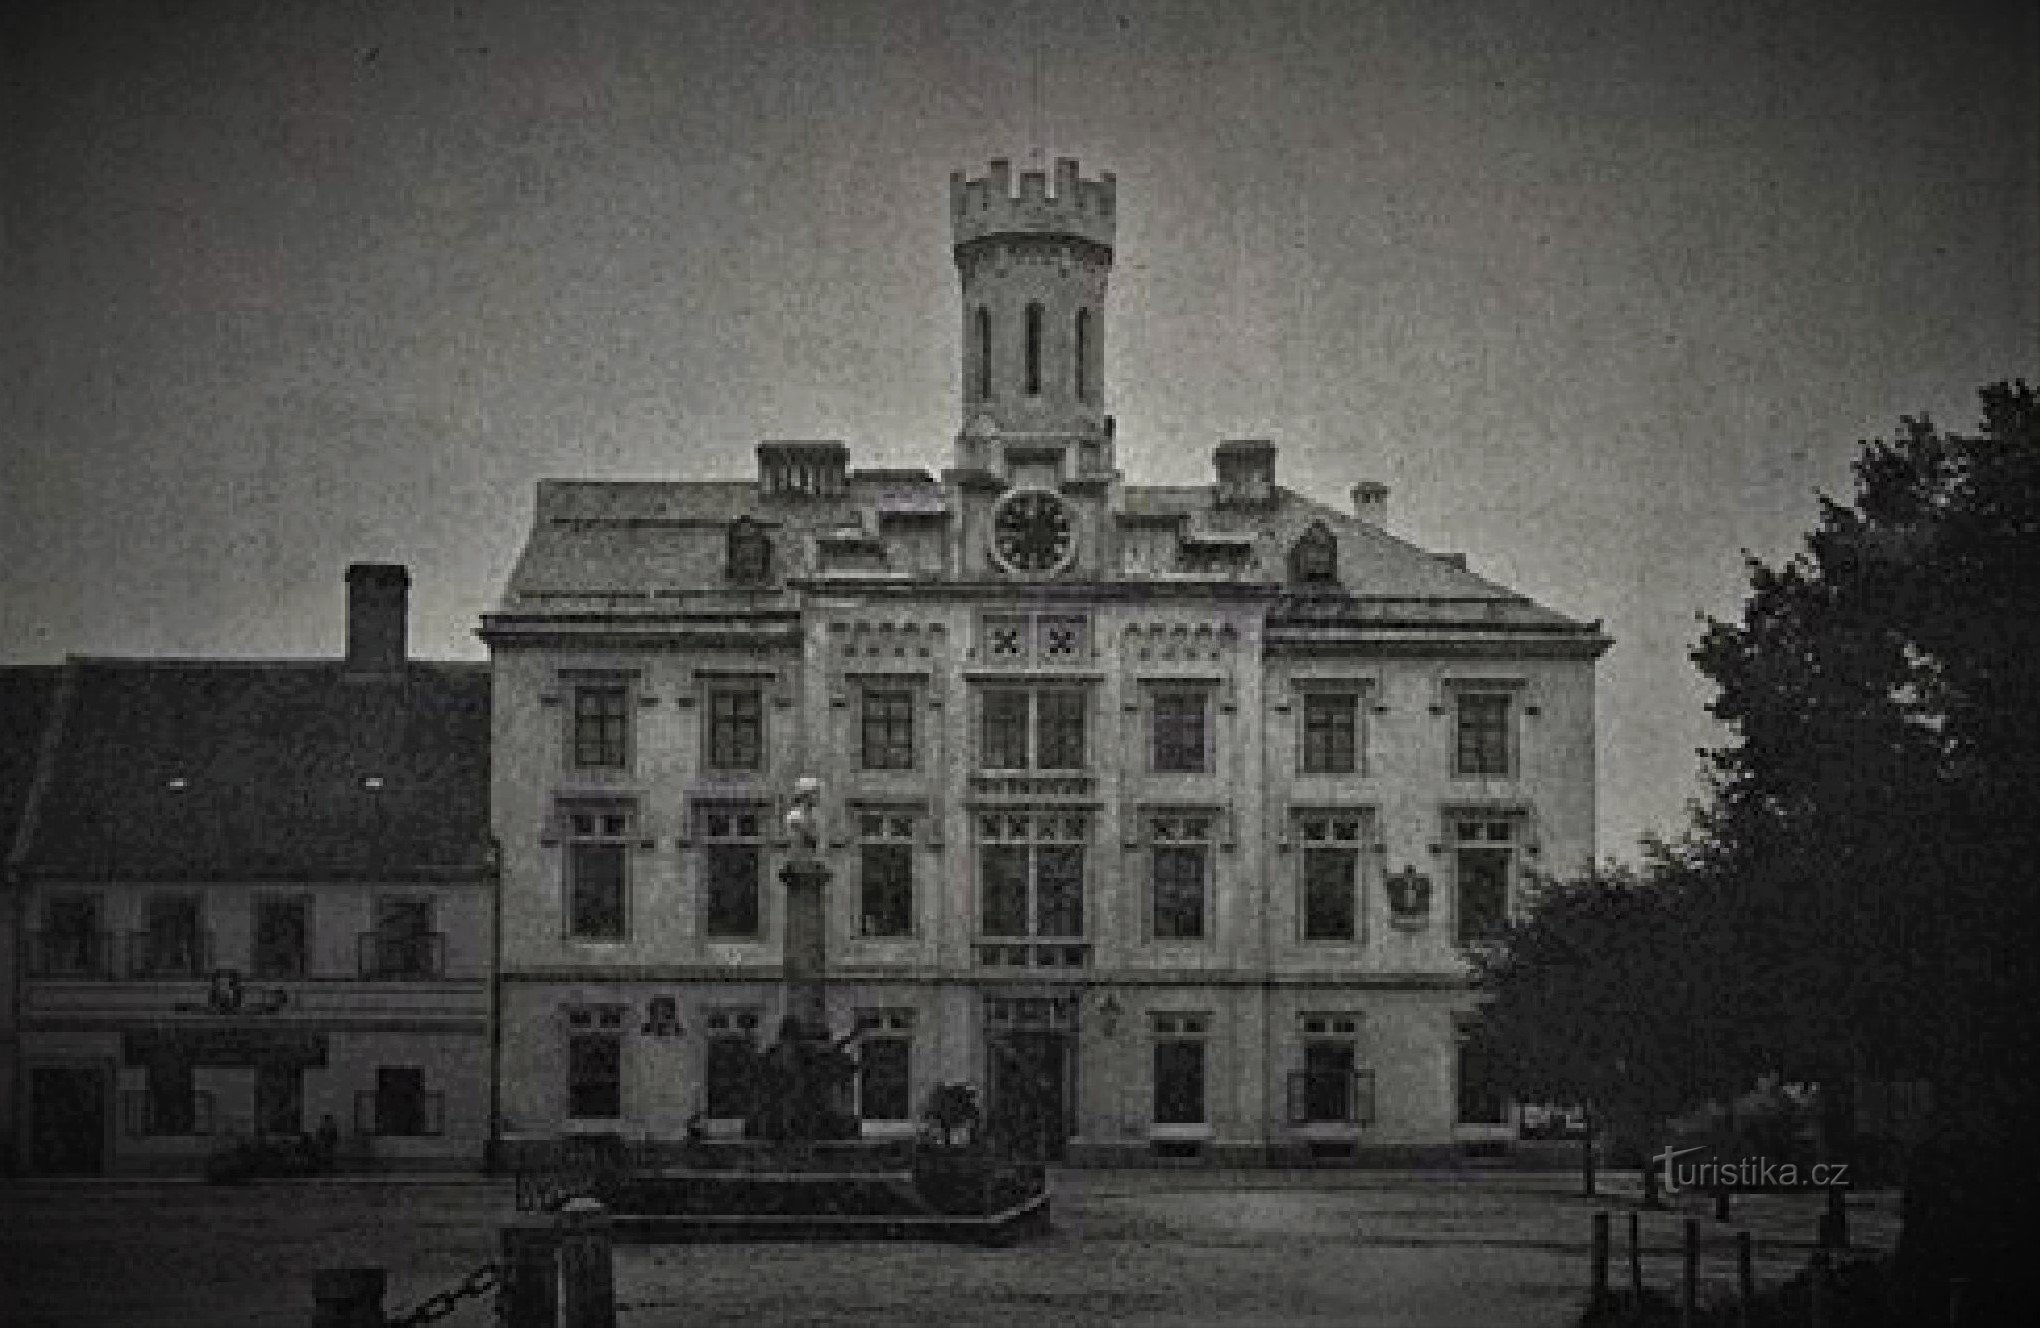 第一次世界大戦前のチェスカー・スカリツァの旧市庁舎 No. 1